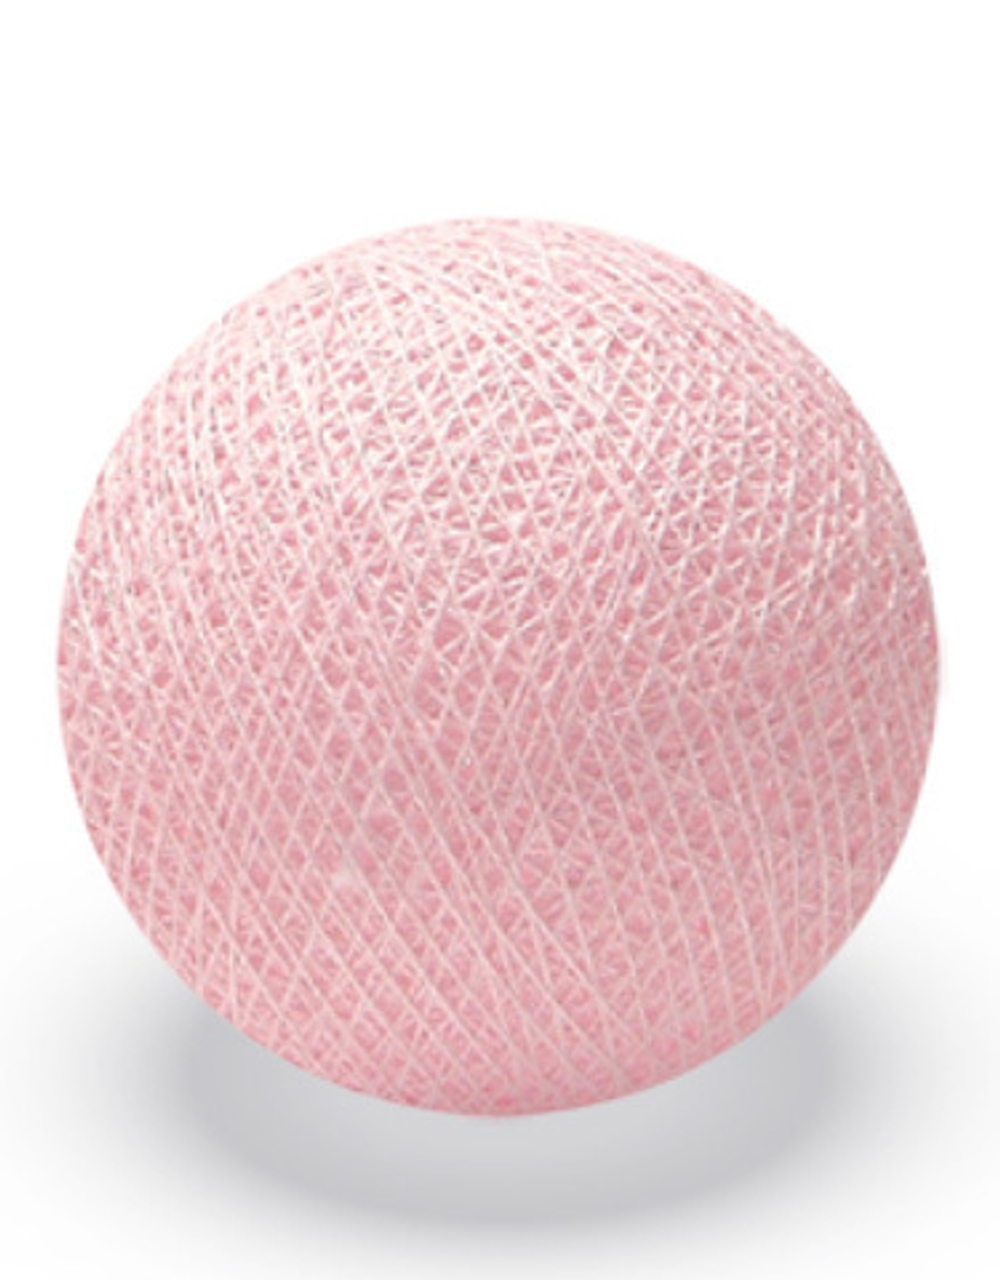 Хлопковый шарик нежно-розовый